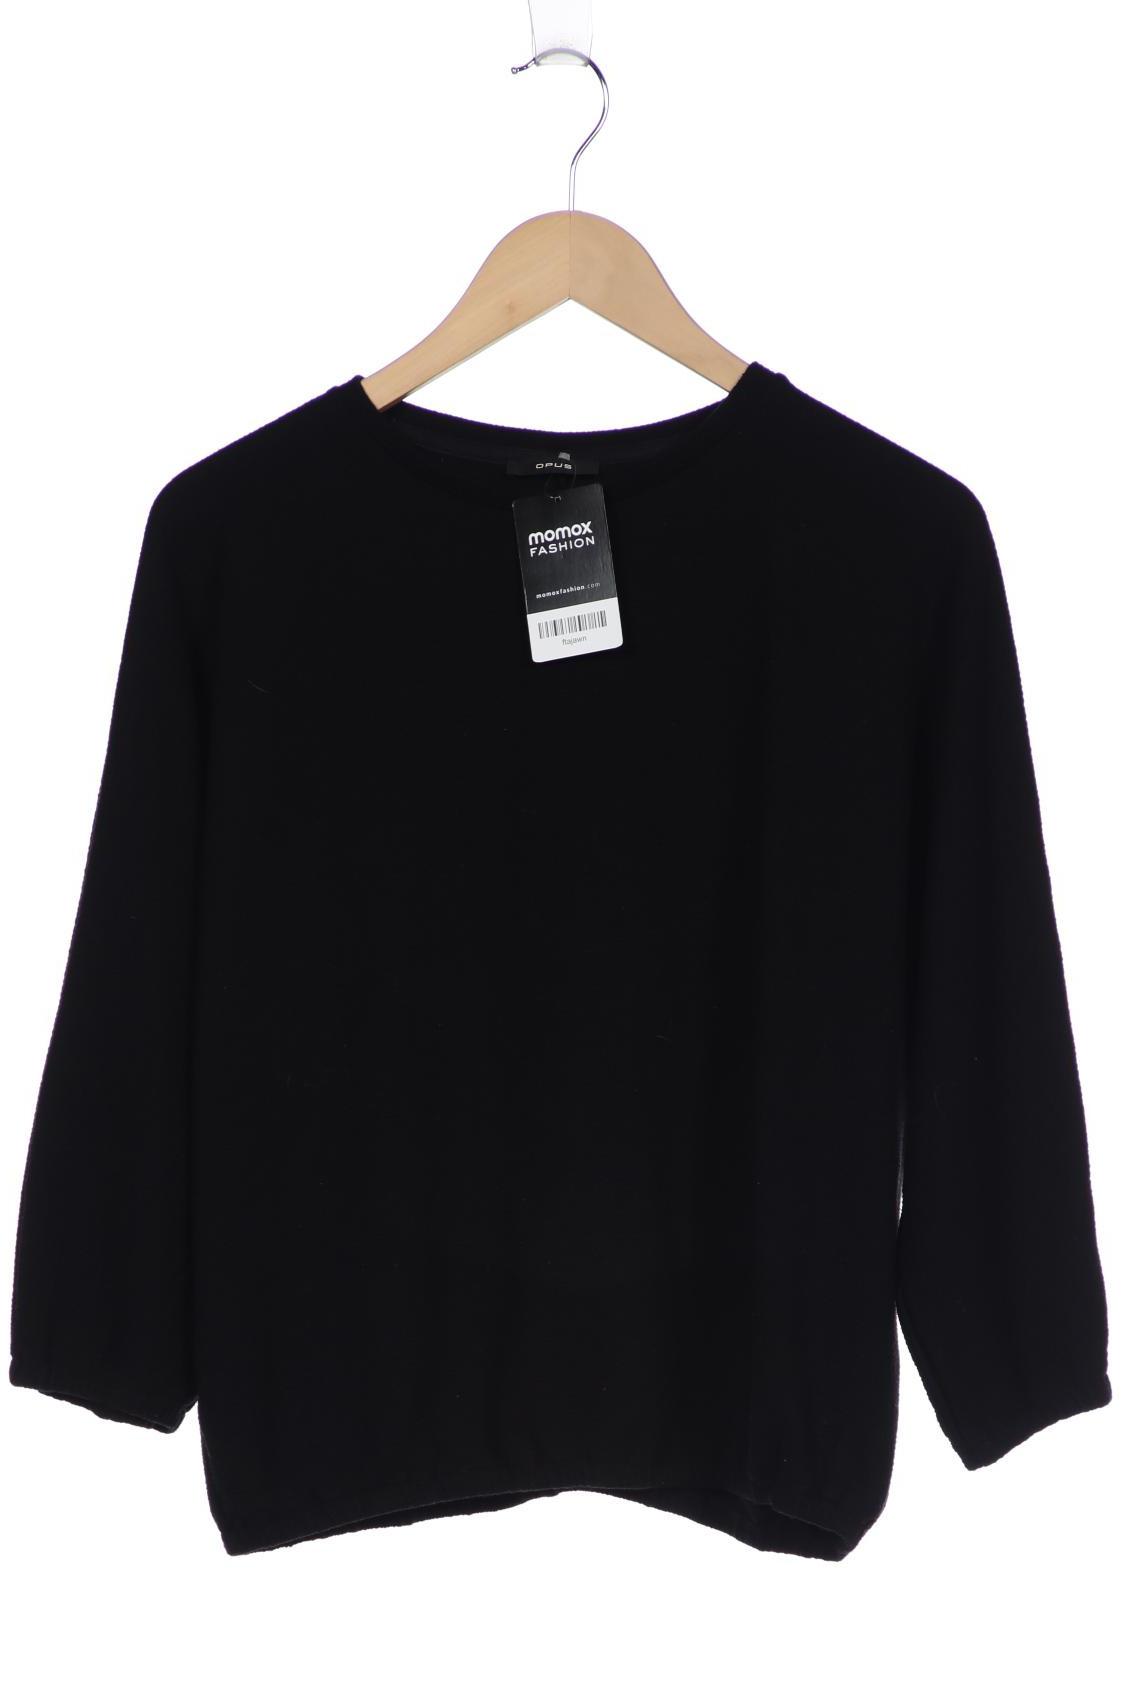 Opus Damen Sweatshirt, schwarz von Opus